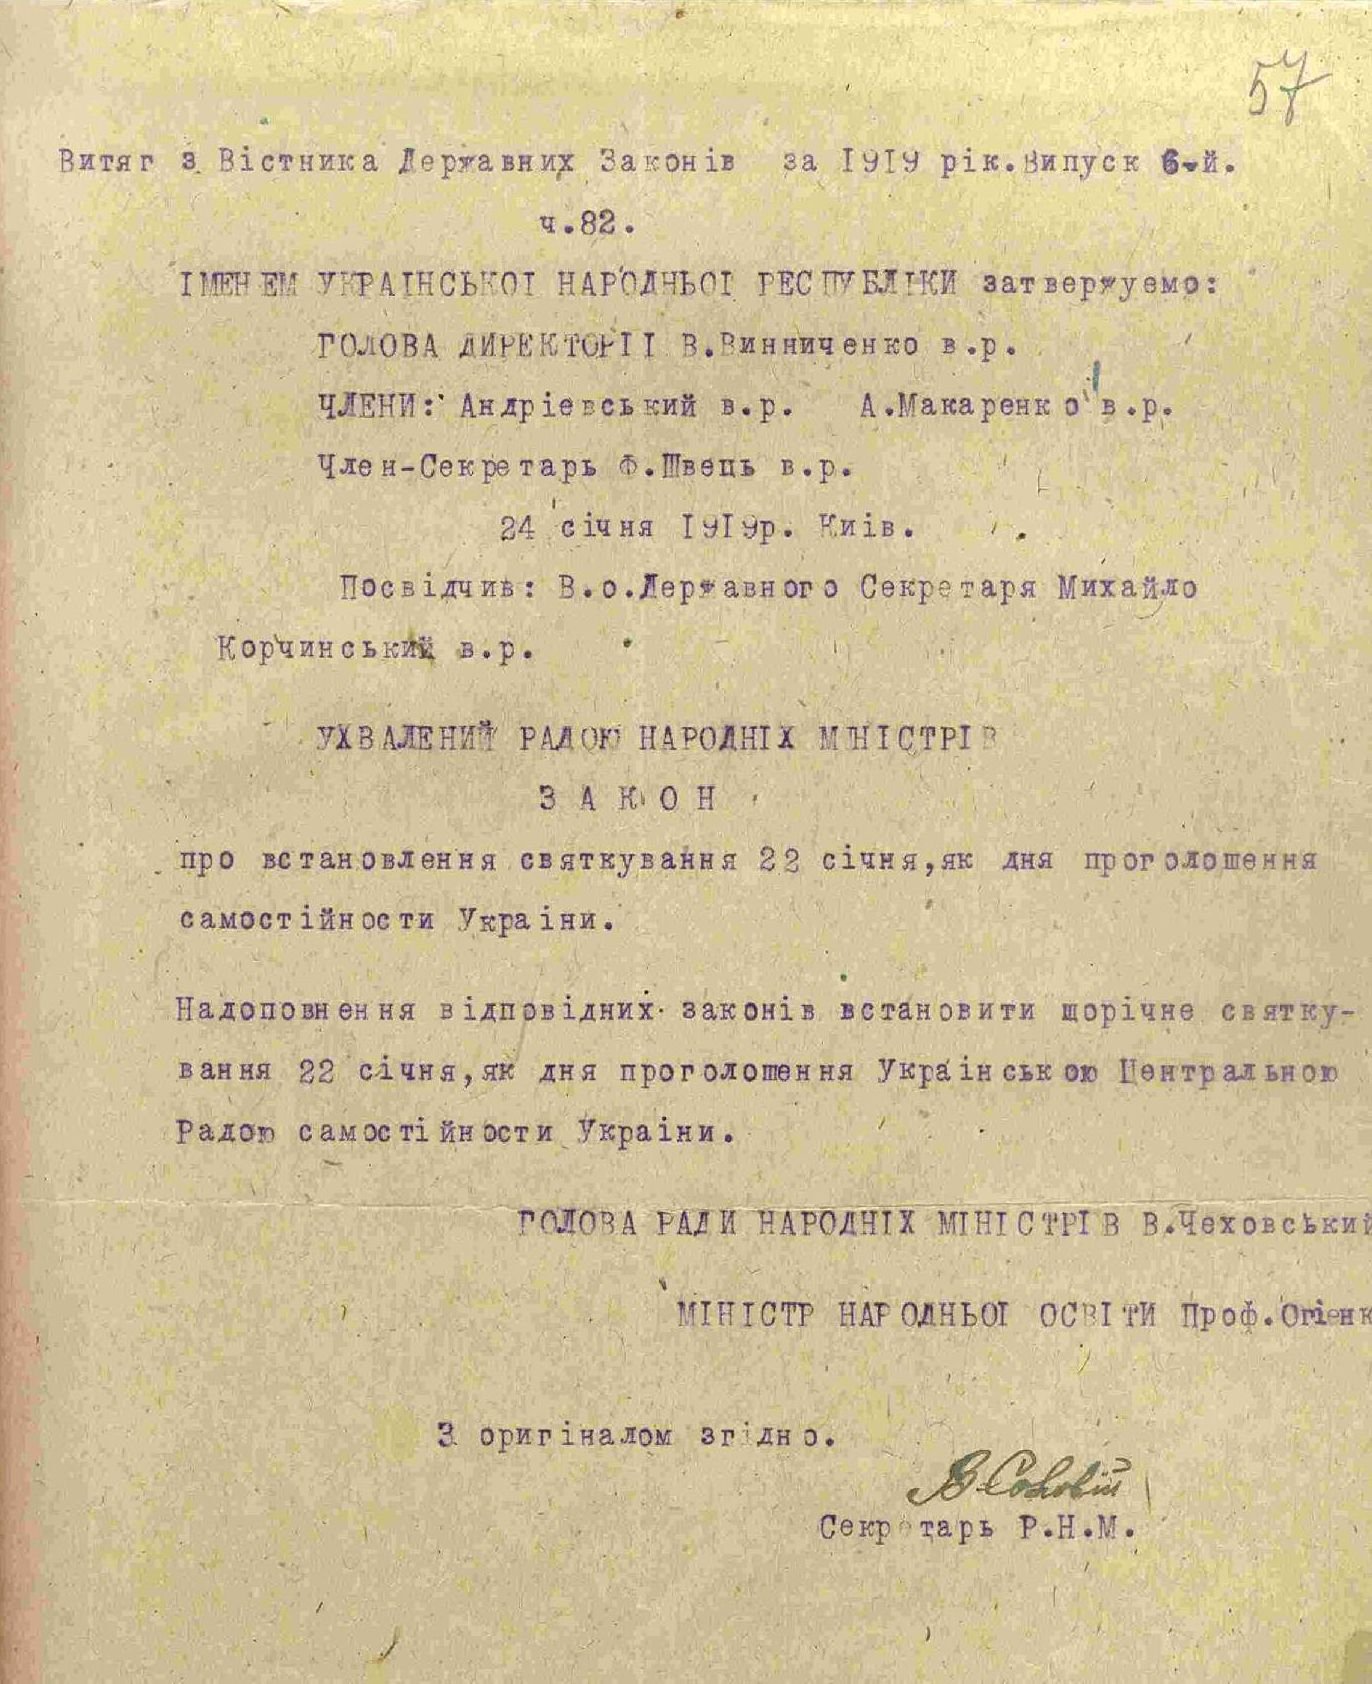 Закон Української Народної Республіки про встановлення святкування 22 січня, як дня проголошення самостійності України. 24 січня 1919 р.